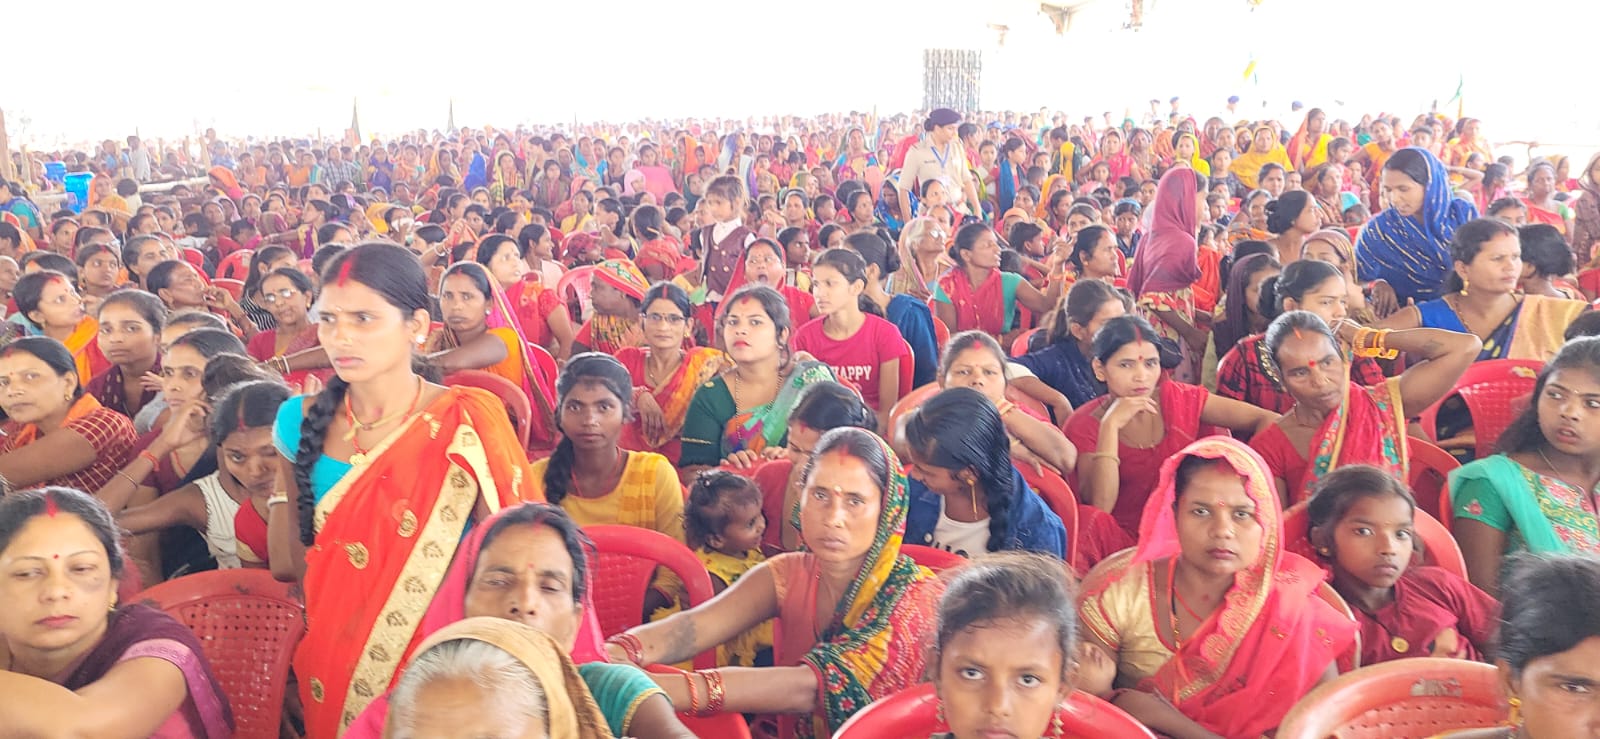 अररिया फोटो: महिला की सभा में भीड़